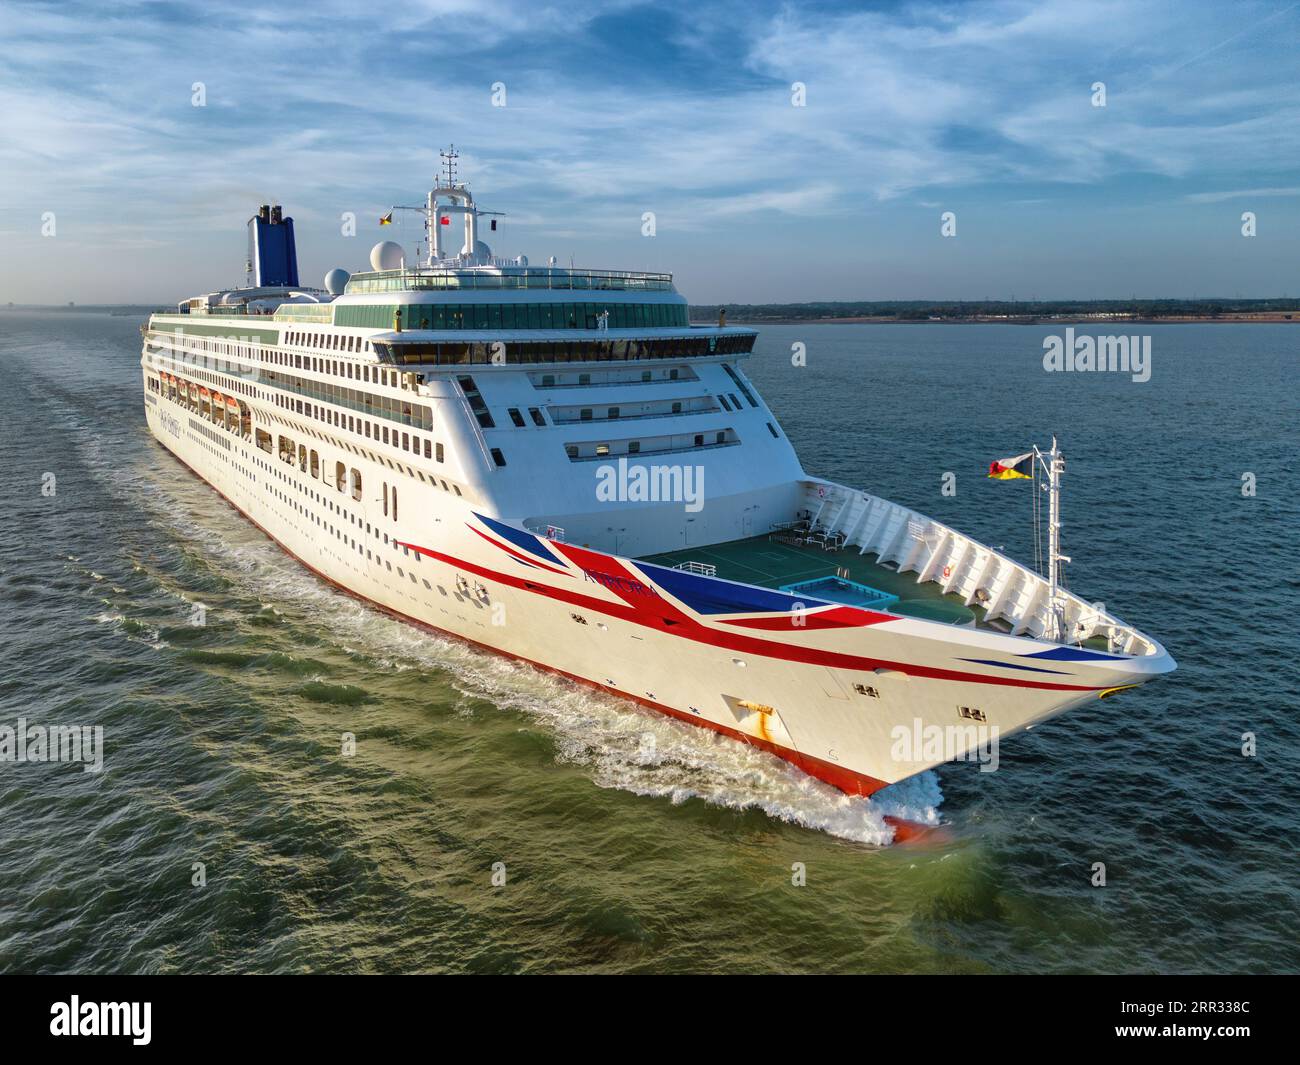 Aurora è una nave da crociera gestita da P&o Cruises, parte della Carnival Corporation. Foto Stock